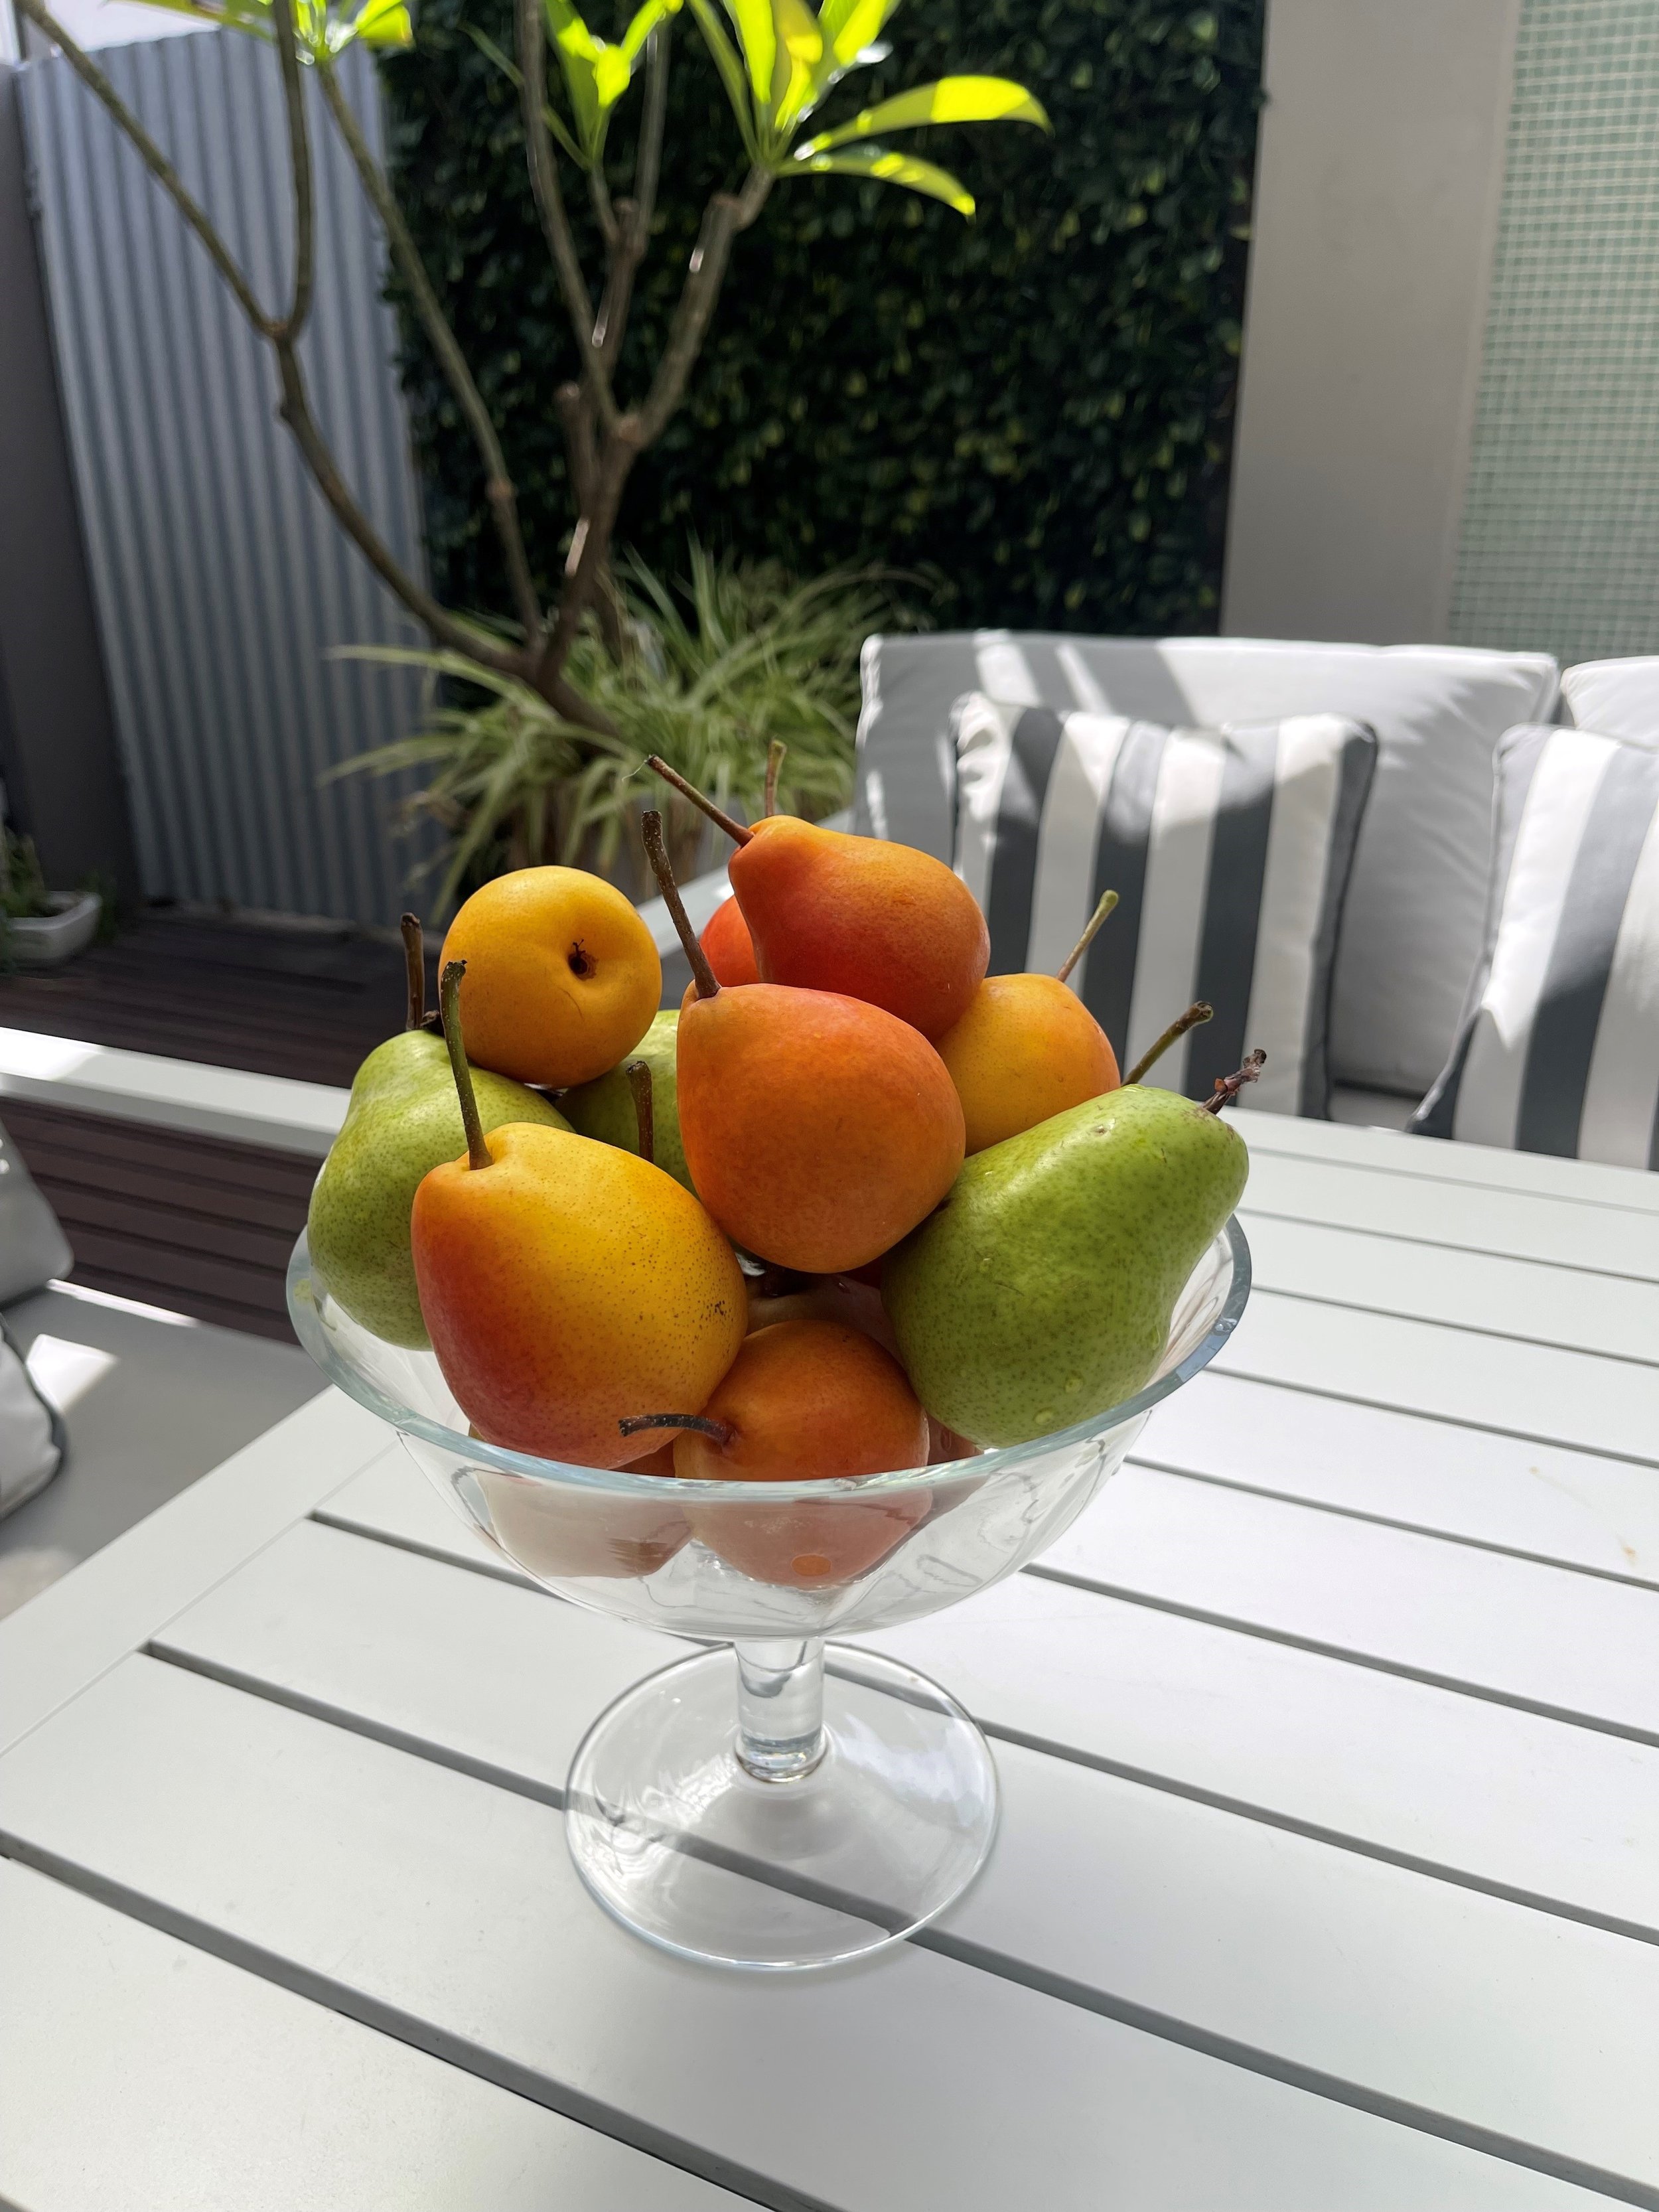 fruit bowl on table.jpg